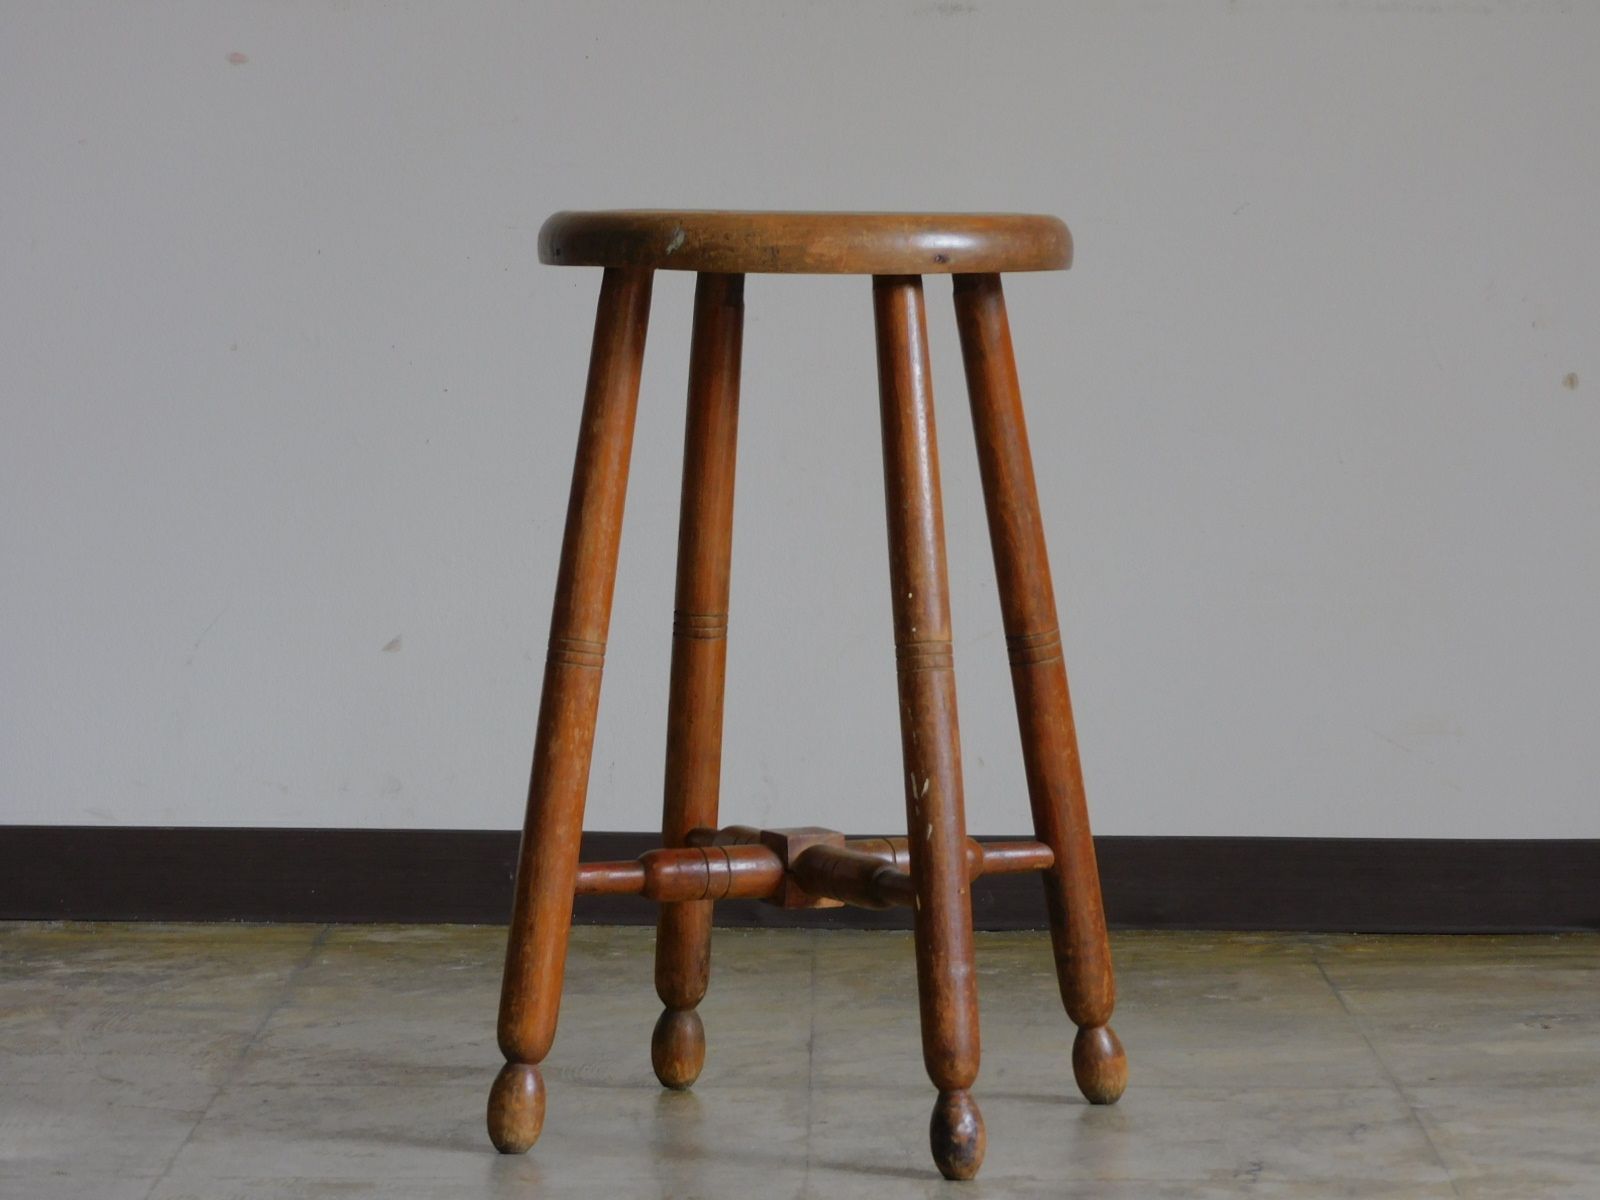 ふるい木味 一枚板座面 造りの良い丸椅子・スツール HK-a-02941 / ブナ 